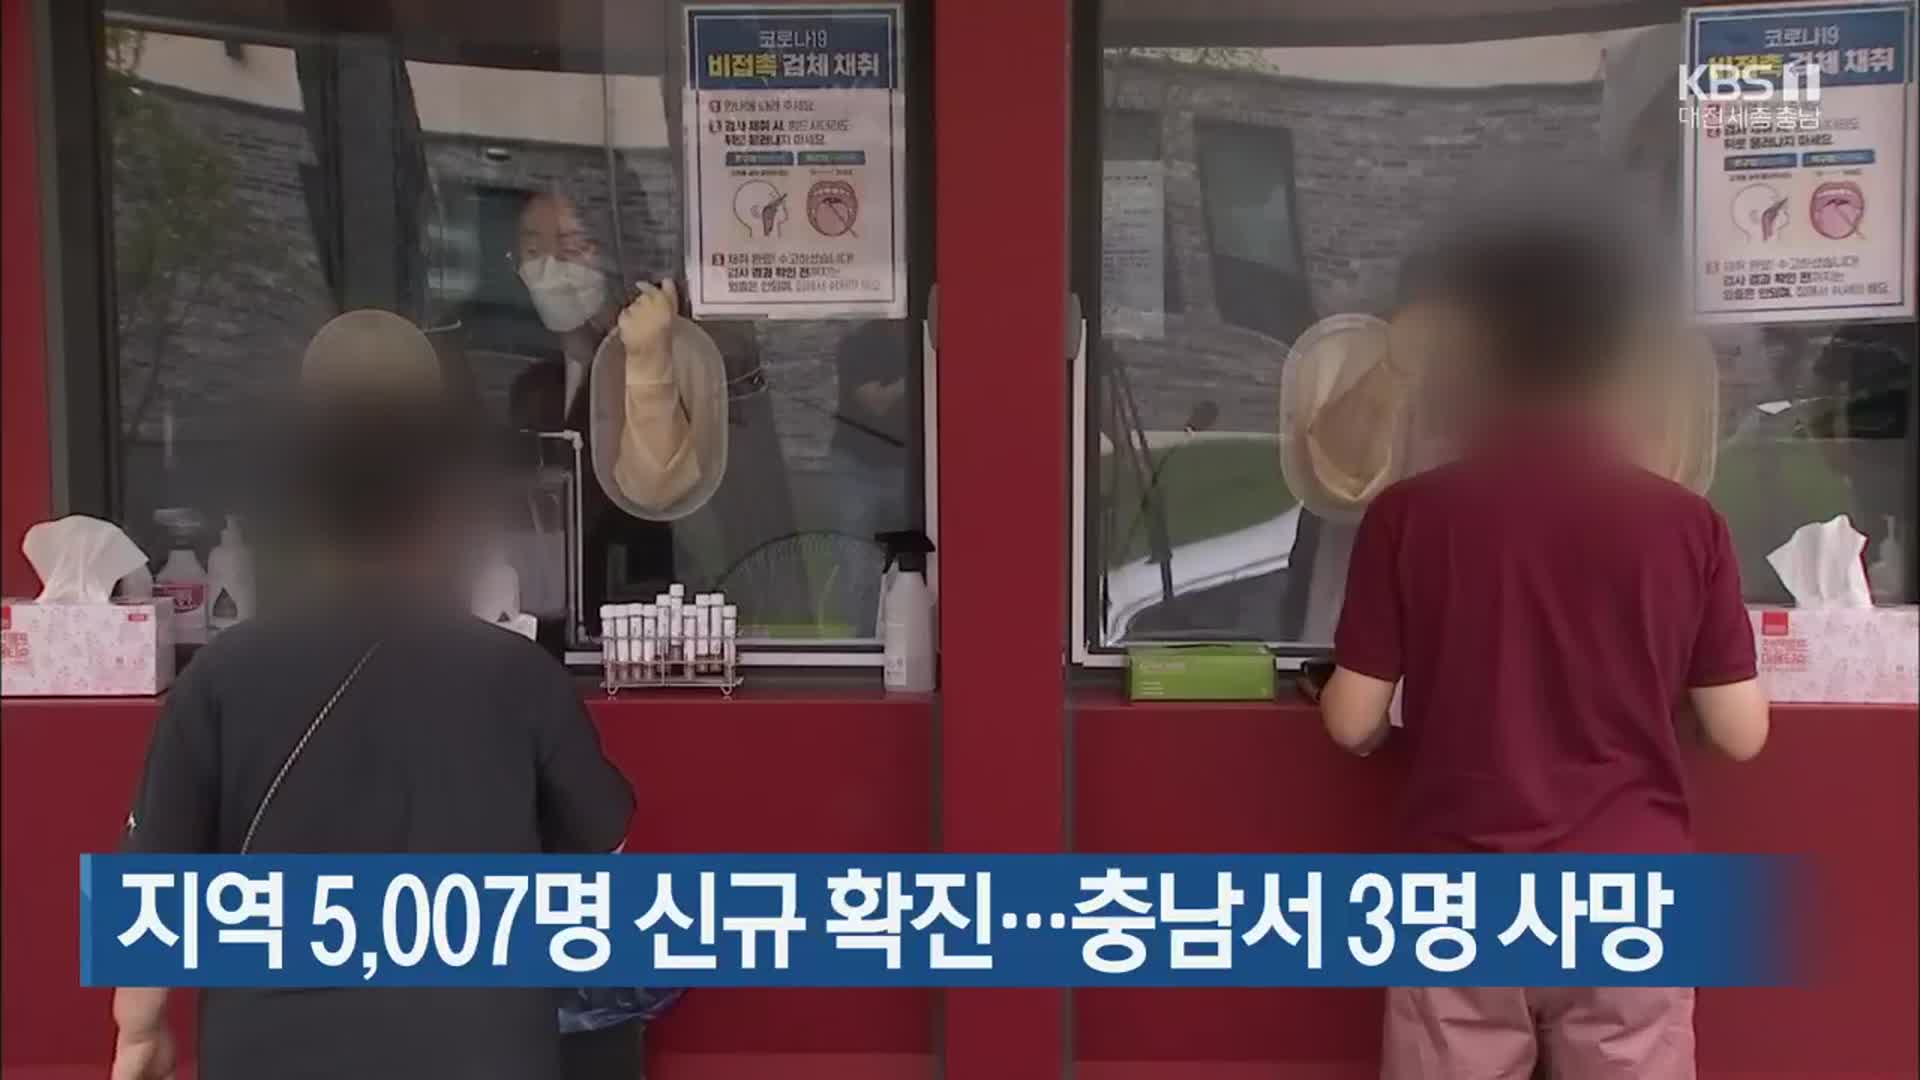 대전·세종·충남 5,007명 신규 확진…충남서 3명 사망